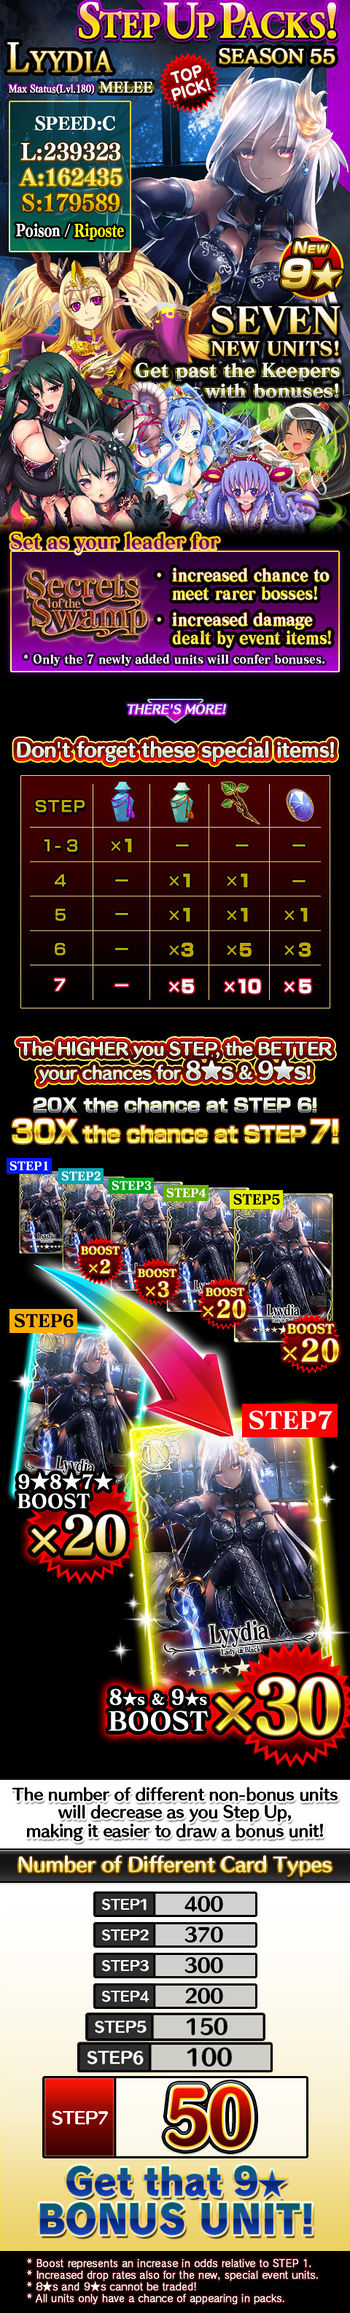 Step Up Packs 55 release.jpg